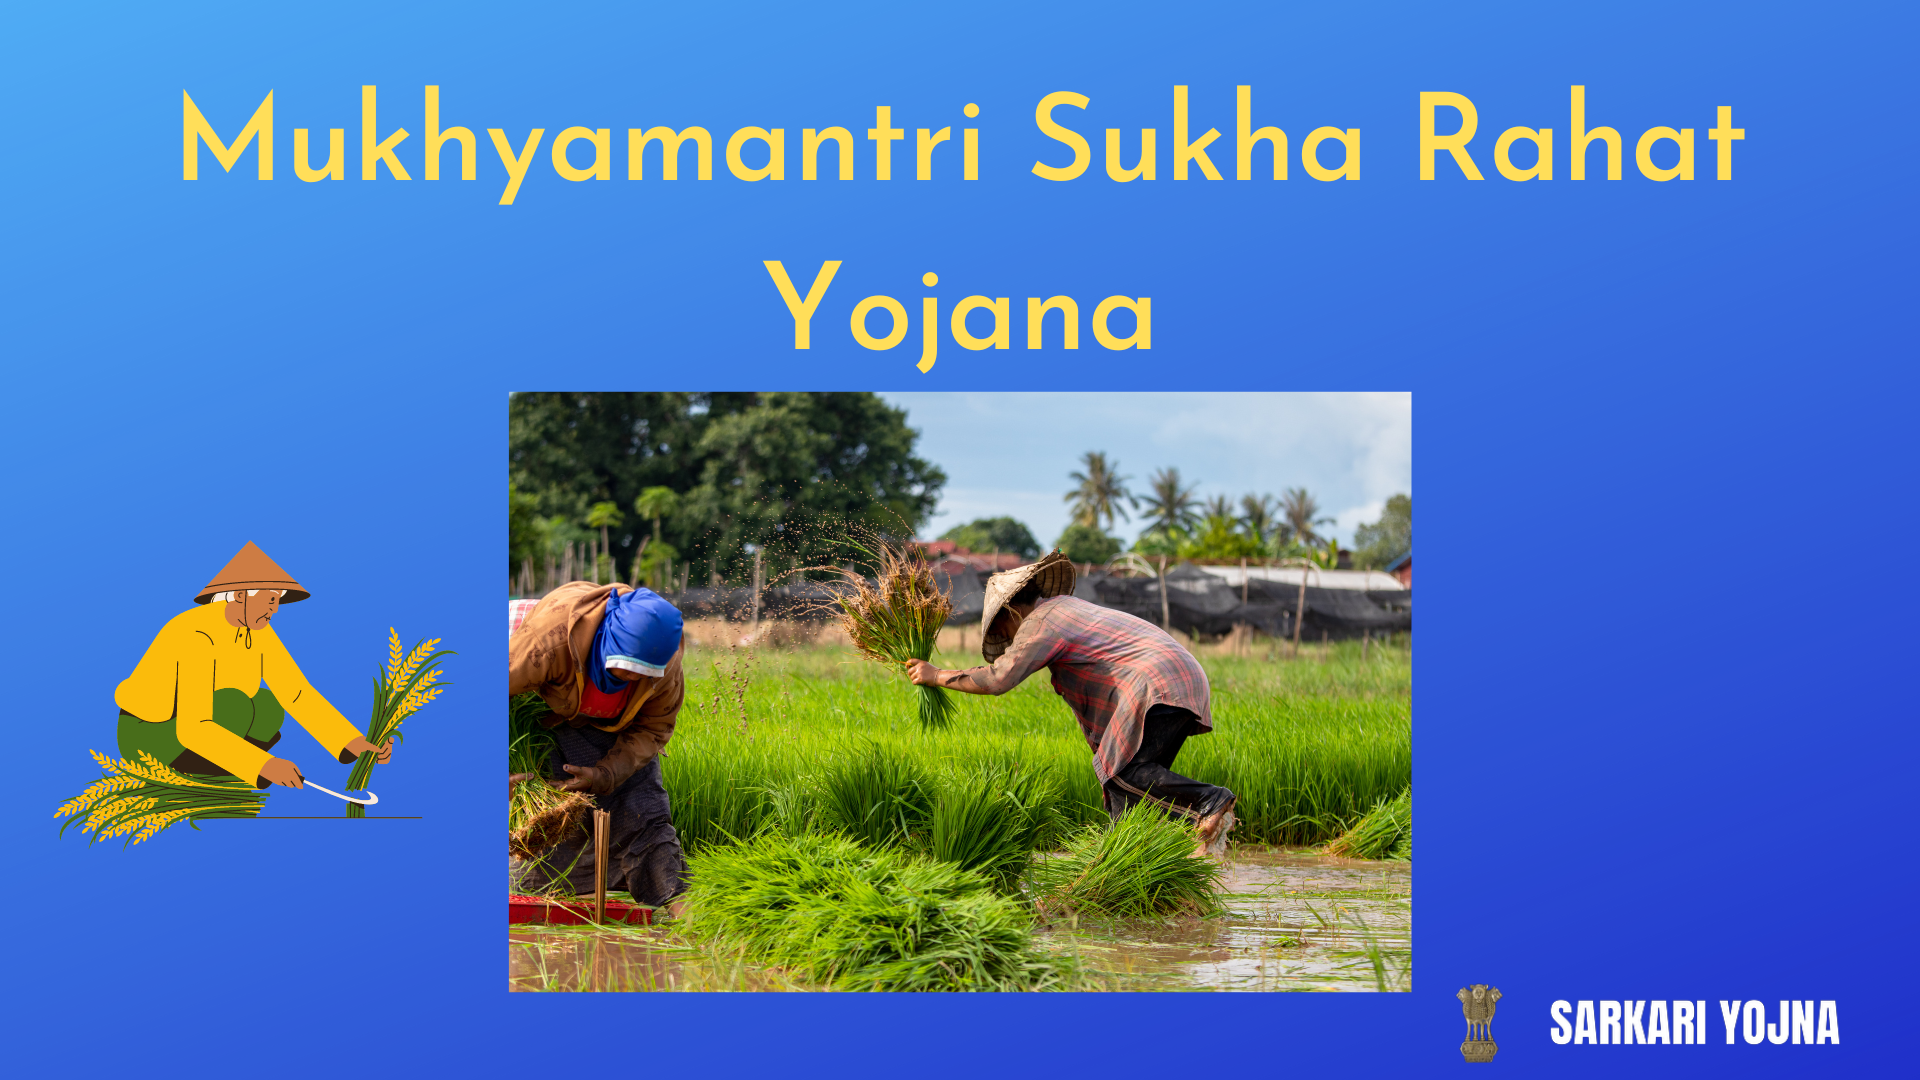 Mukhyamantri Sukha Rahat Yojana: Financial Assistance for Farmers in Uttar Pradesh